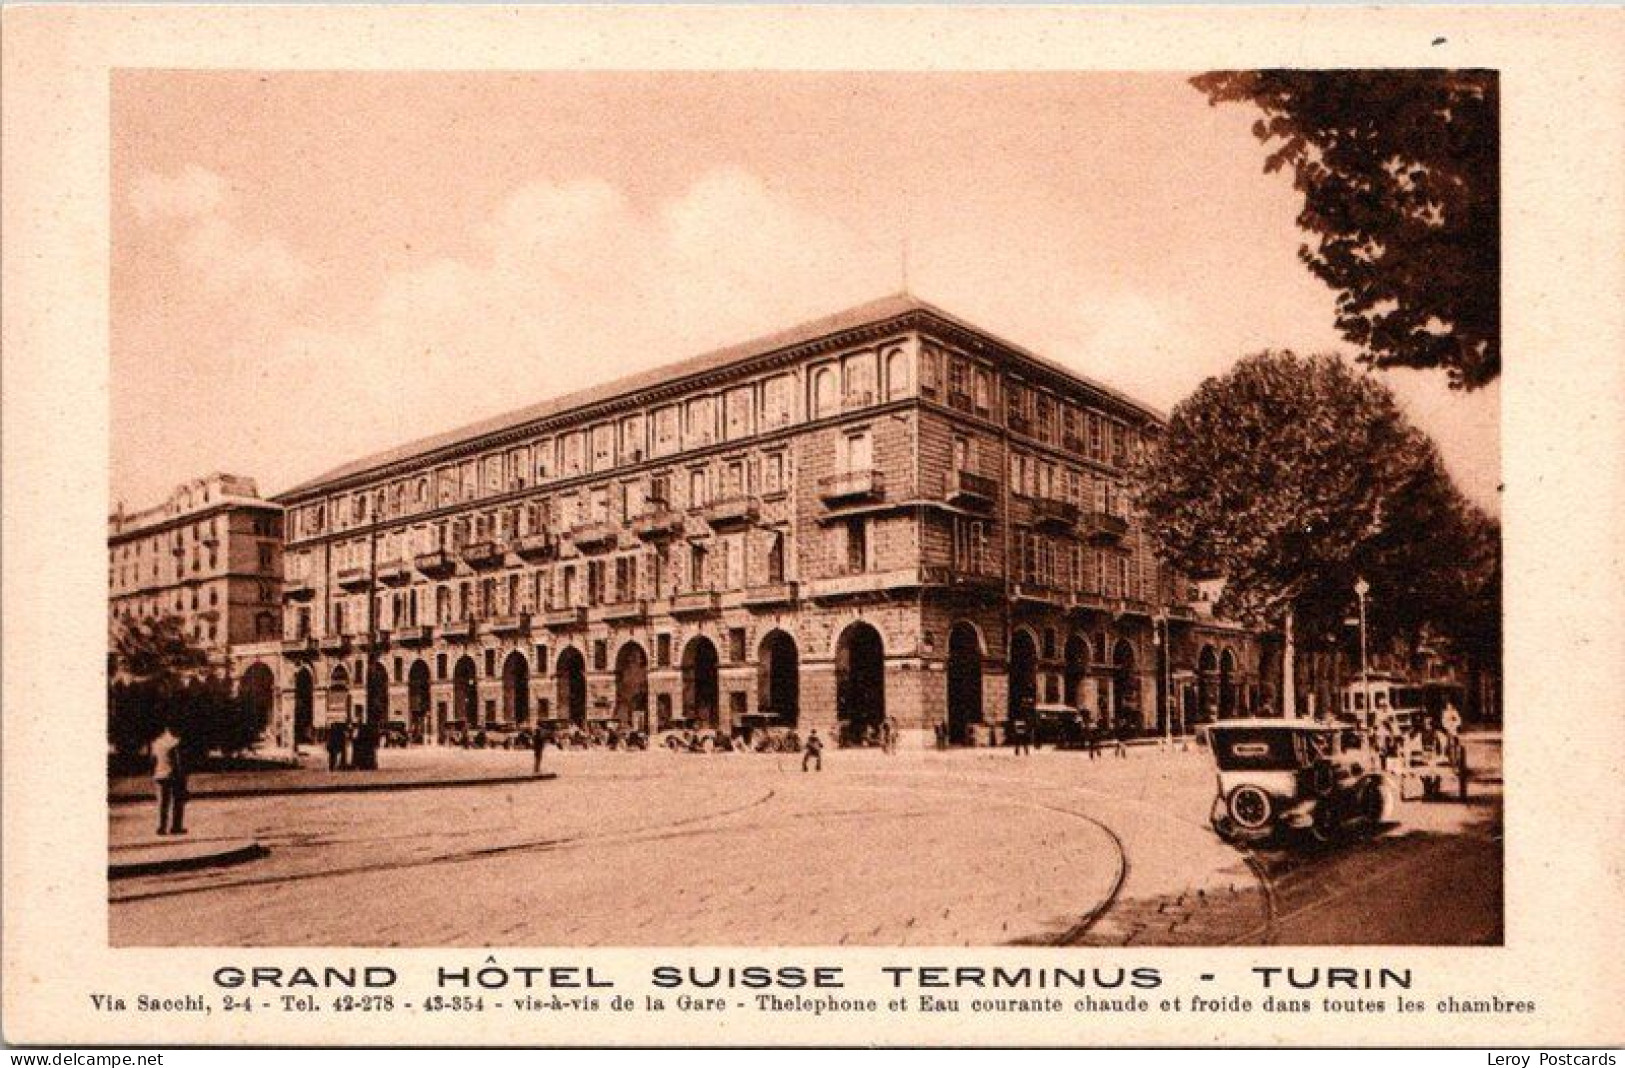 Grand Hotel Suisse Terminus, Turin, Italy - Wirtschaften, Hotels & Restaurants